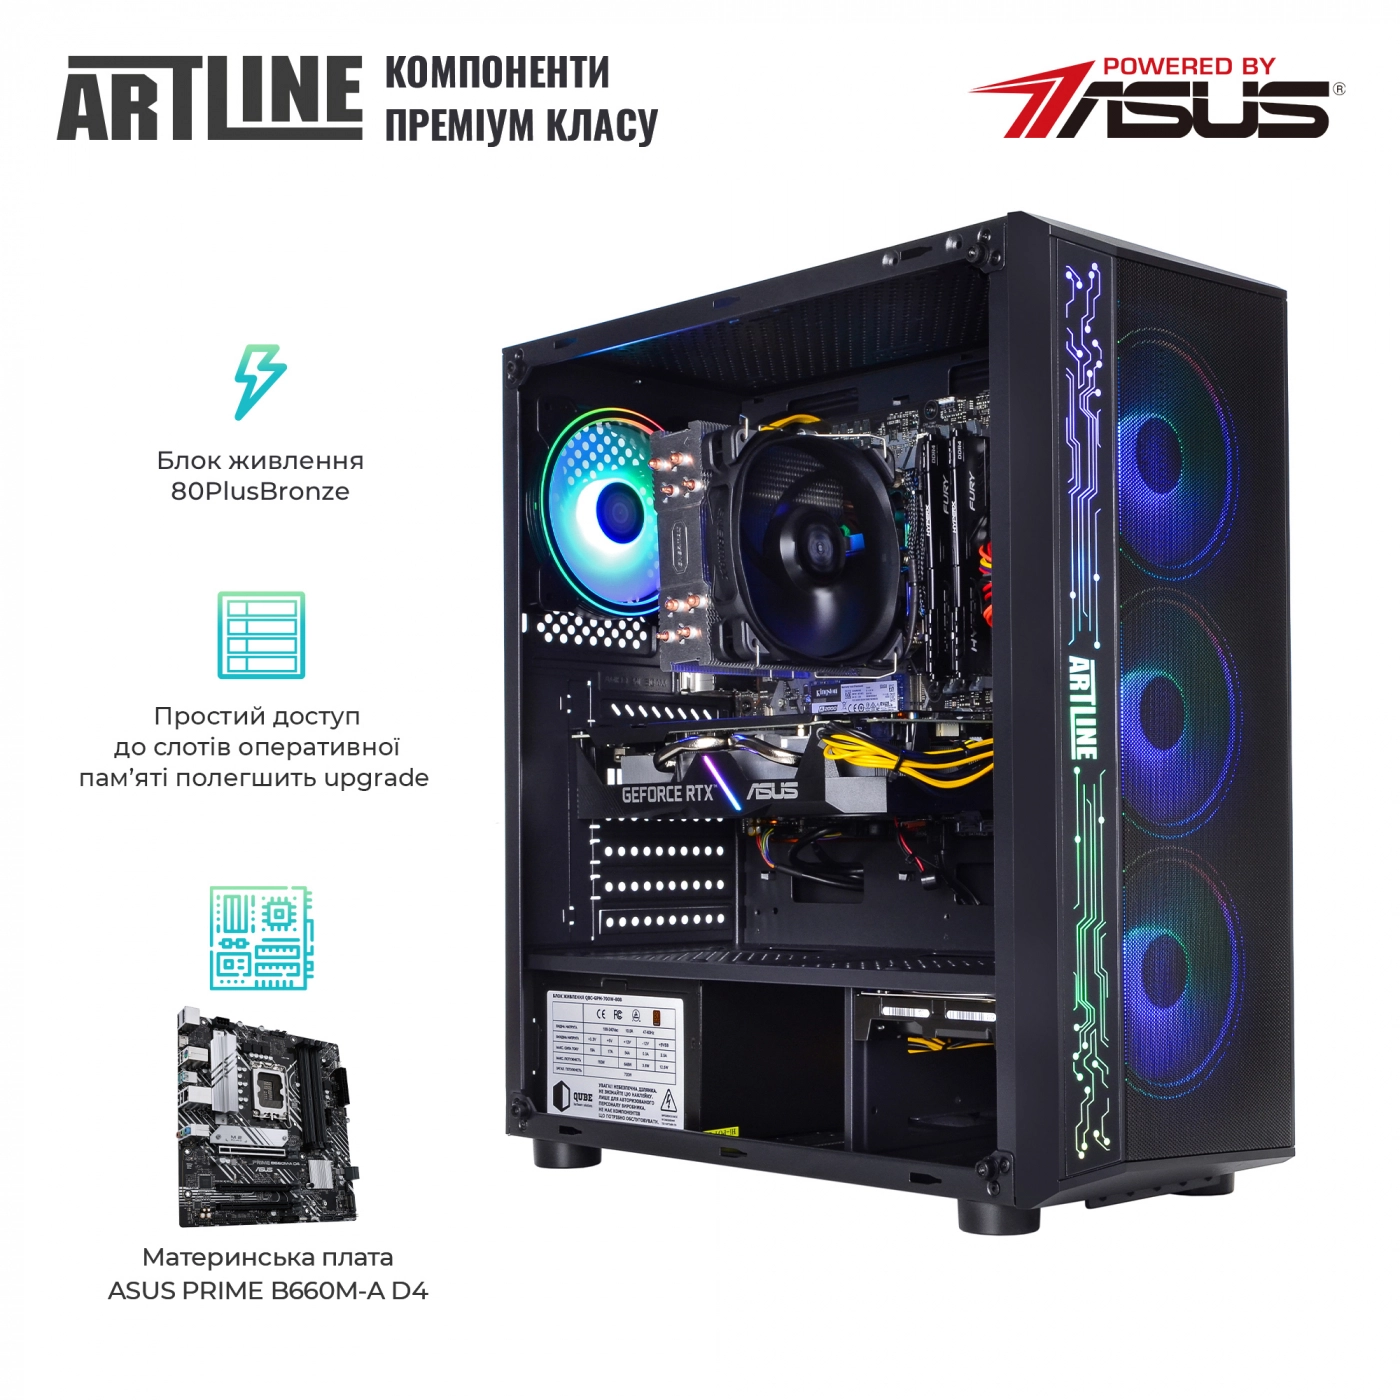 Купить Компьютер ARTLINE Gaming X75v57 - фото 3